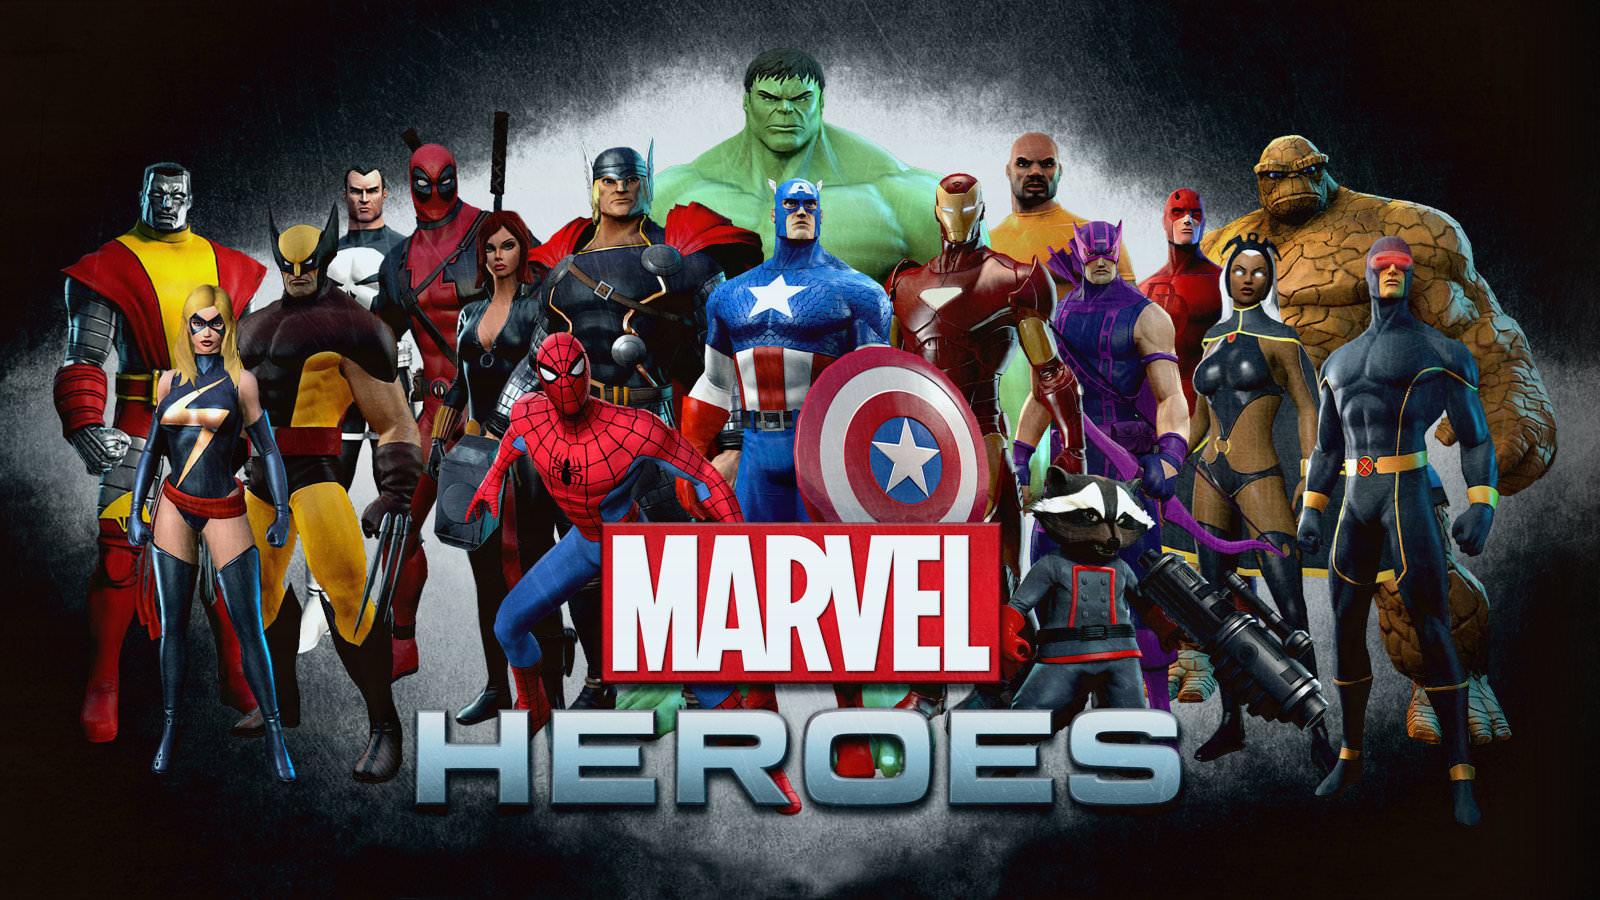 Marvel Heroes wallpaper 1600x900 desktop background